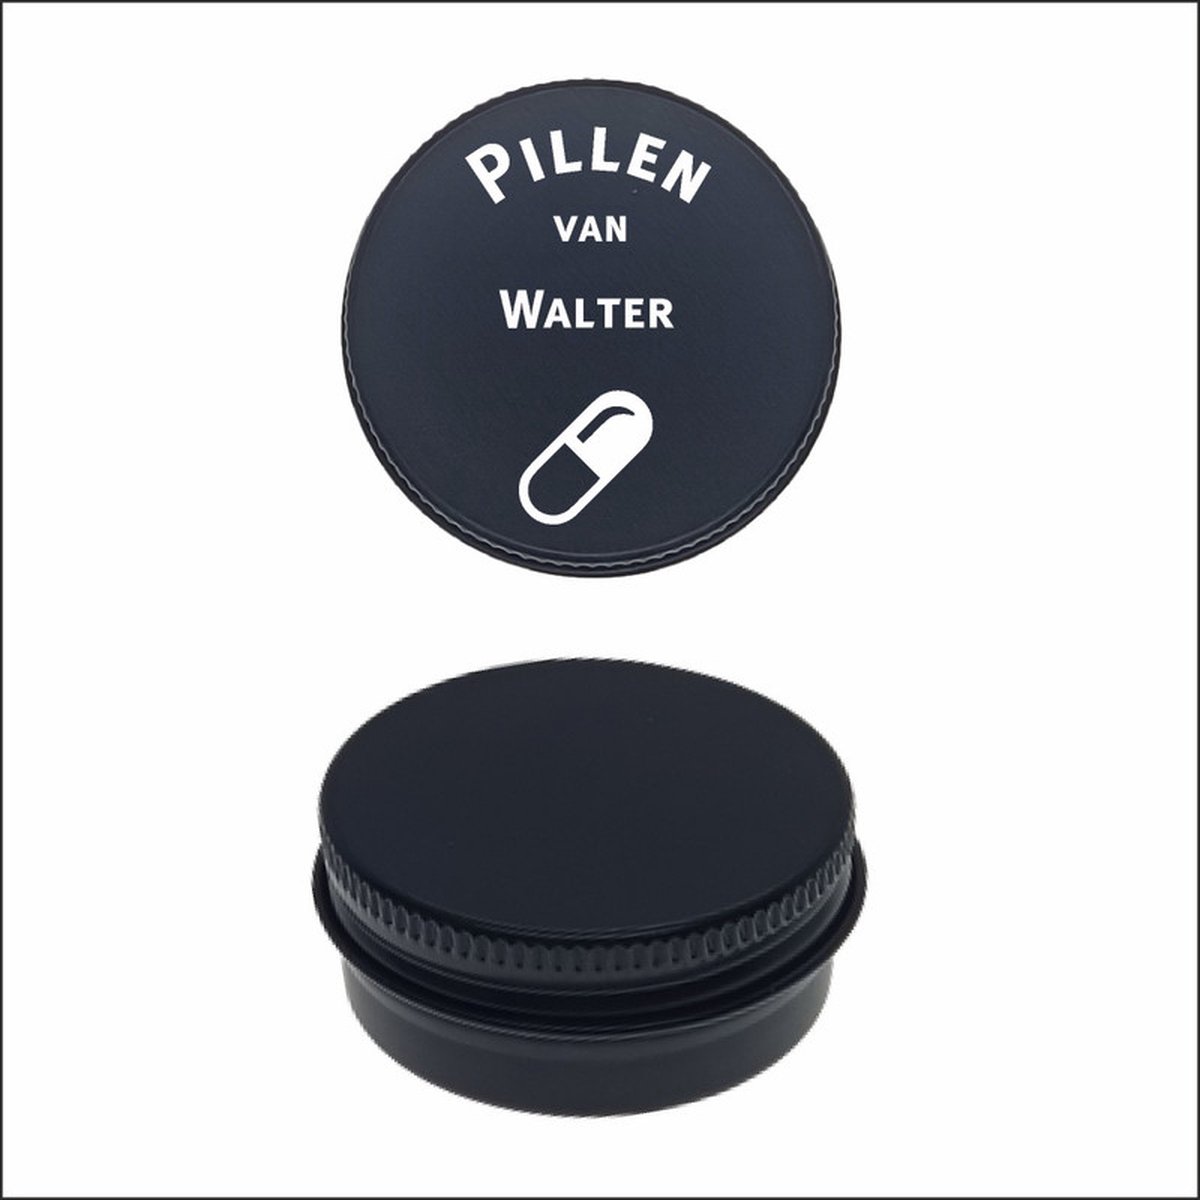 Pillen Blikje Met Naam Gravering - Walter